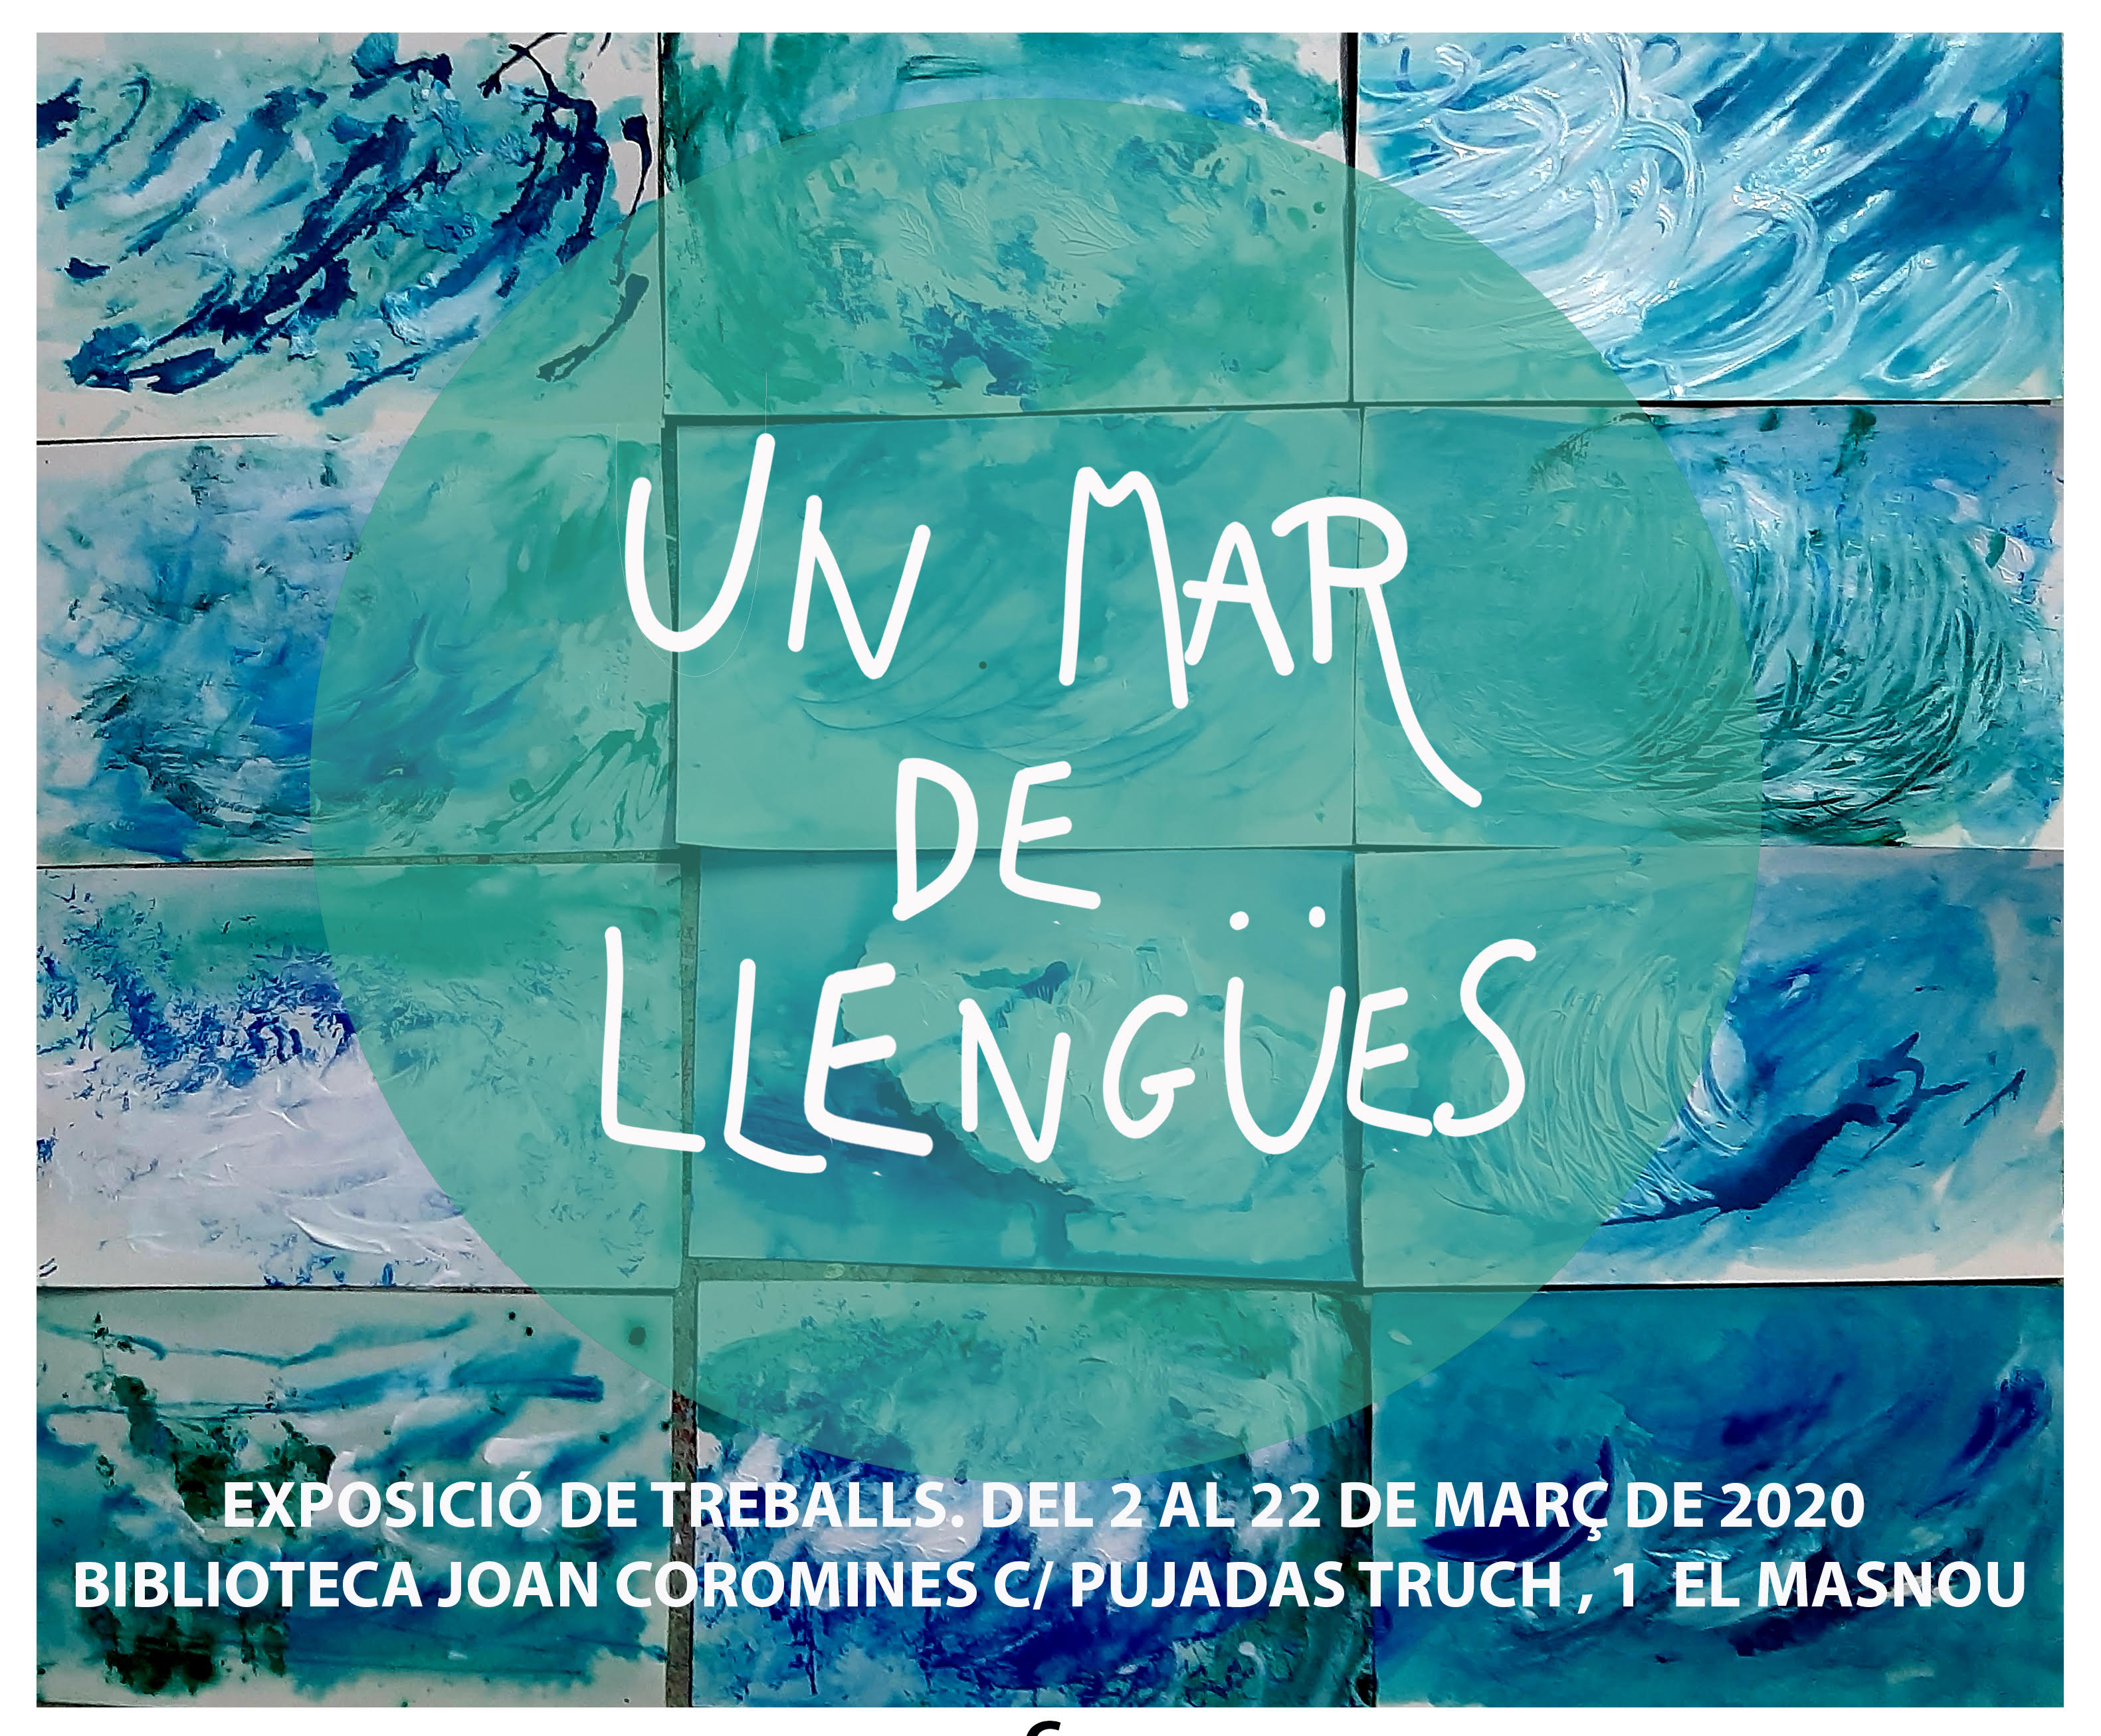 Cartell del projecte UNESCO-El Masnou "Un mar de llengües"/Cartel del proyecto UNESCO-El Masnou "Un mar de lenguas"